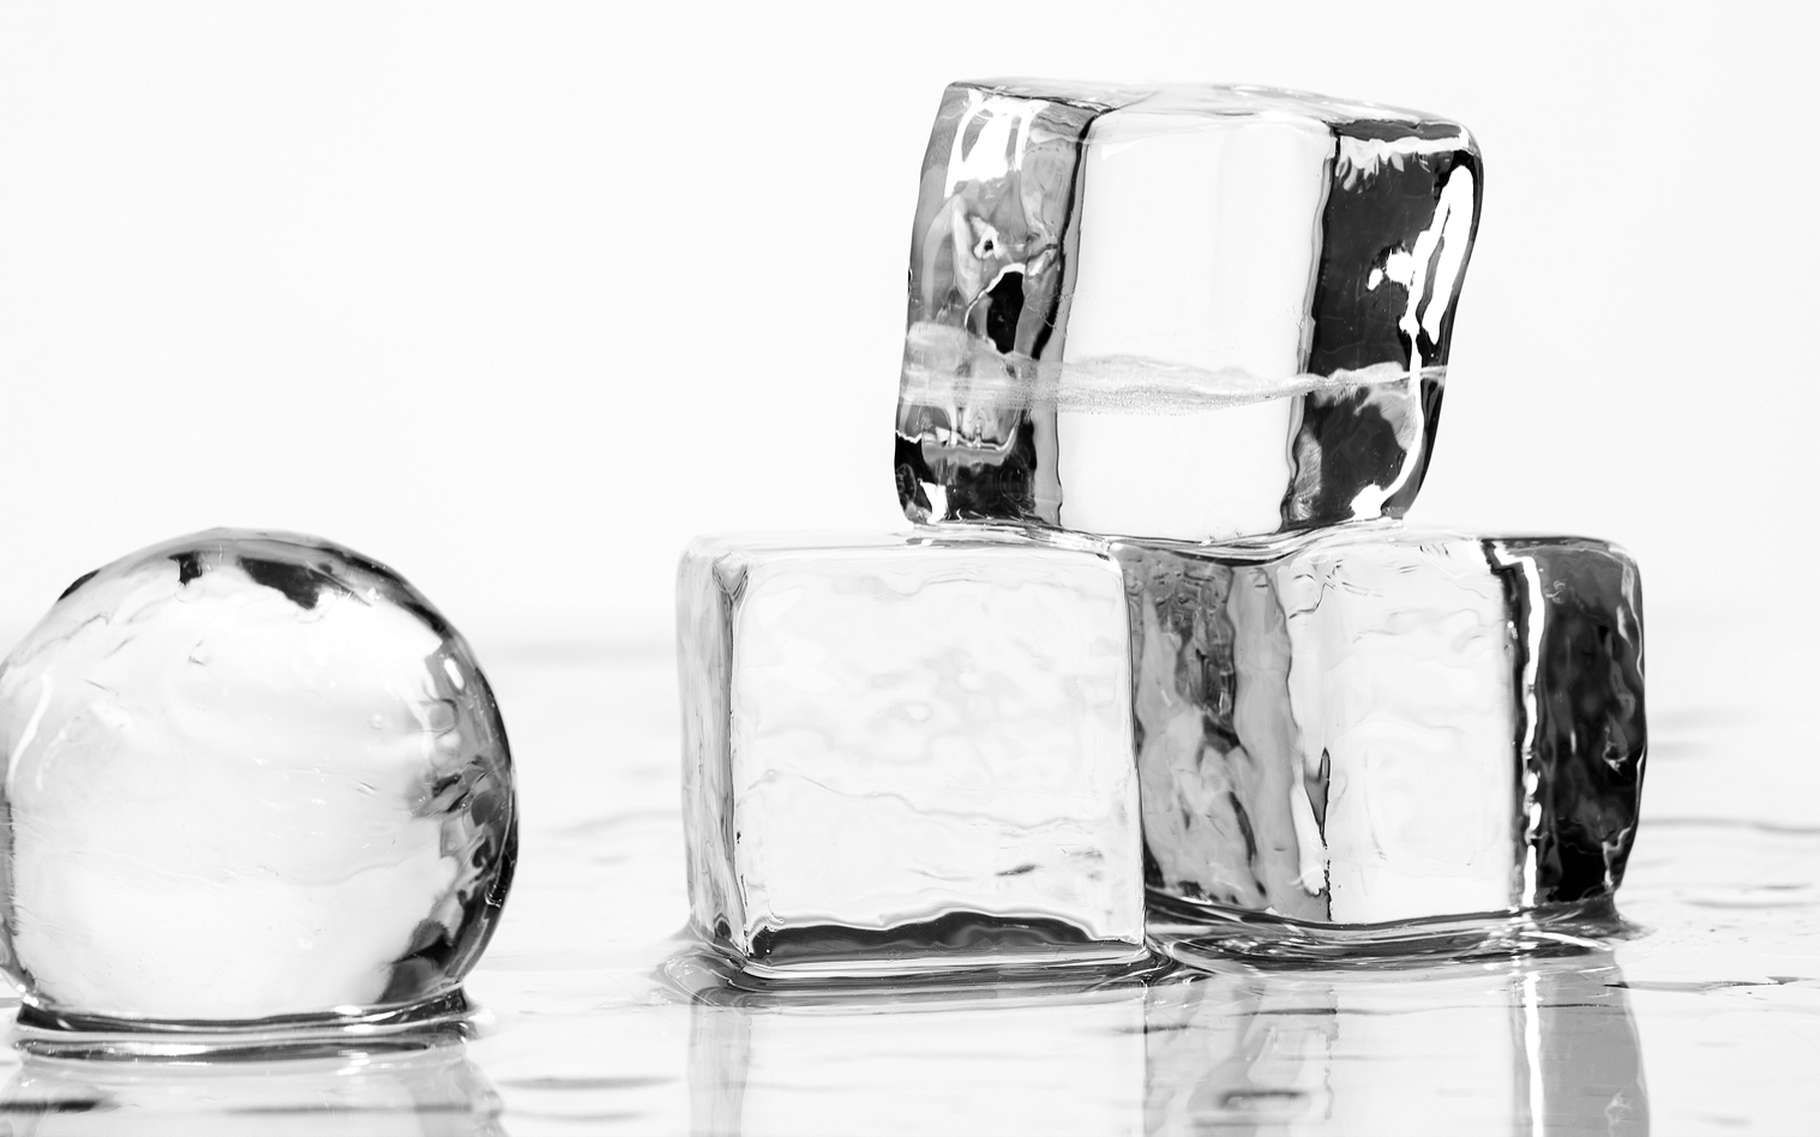 Des cubes de glace ordinaire, plus légère que l'eau liquide. © Allgord, Shutterstock